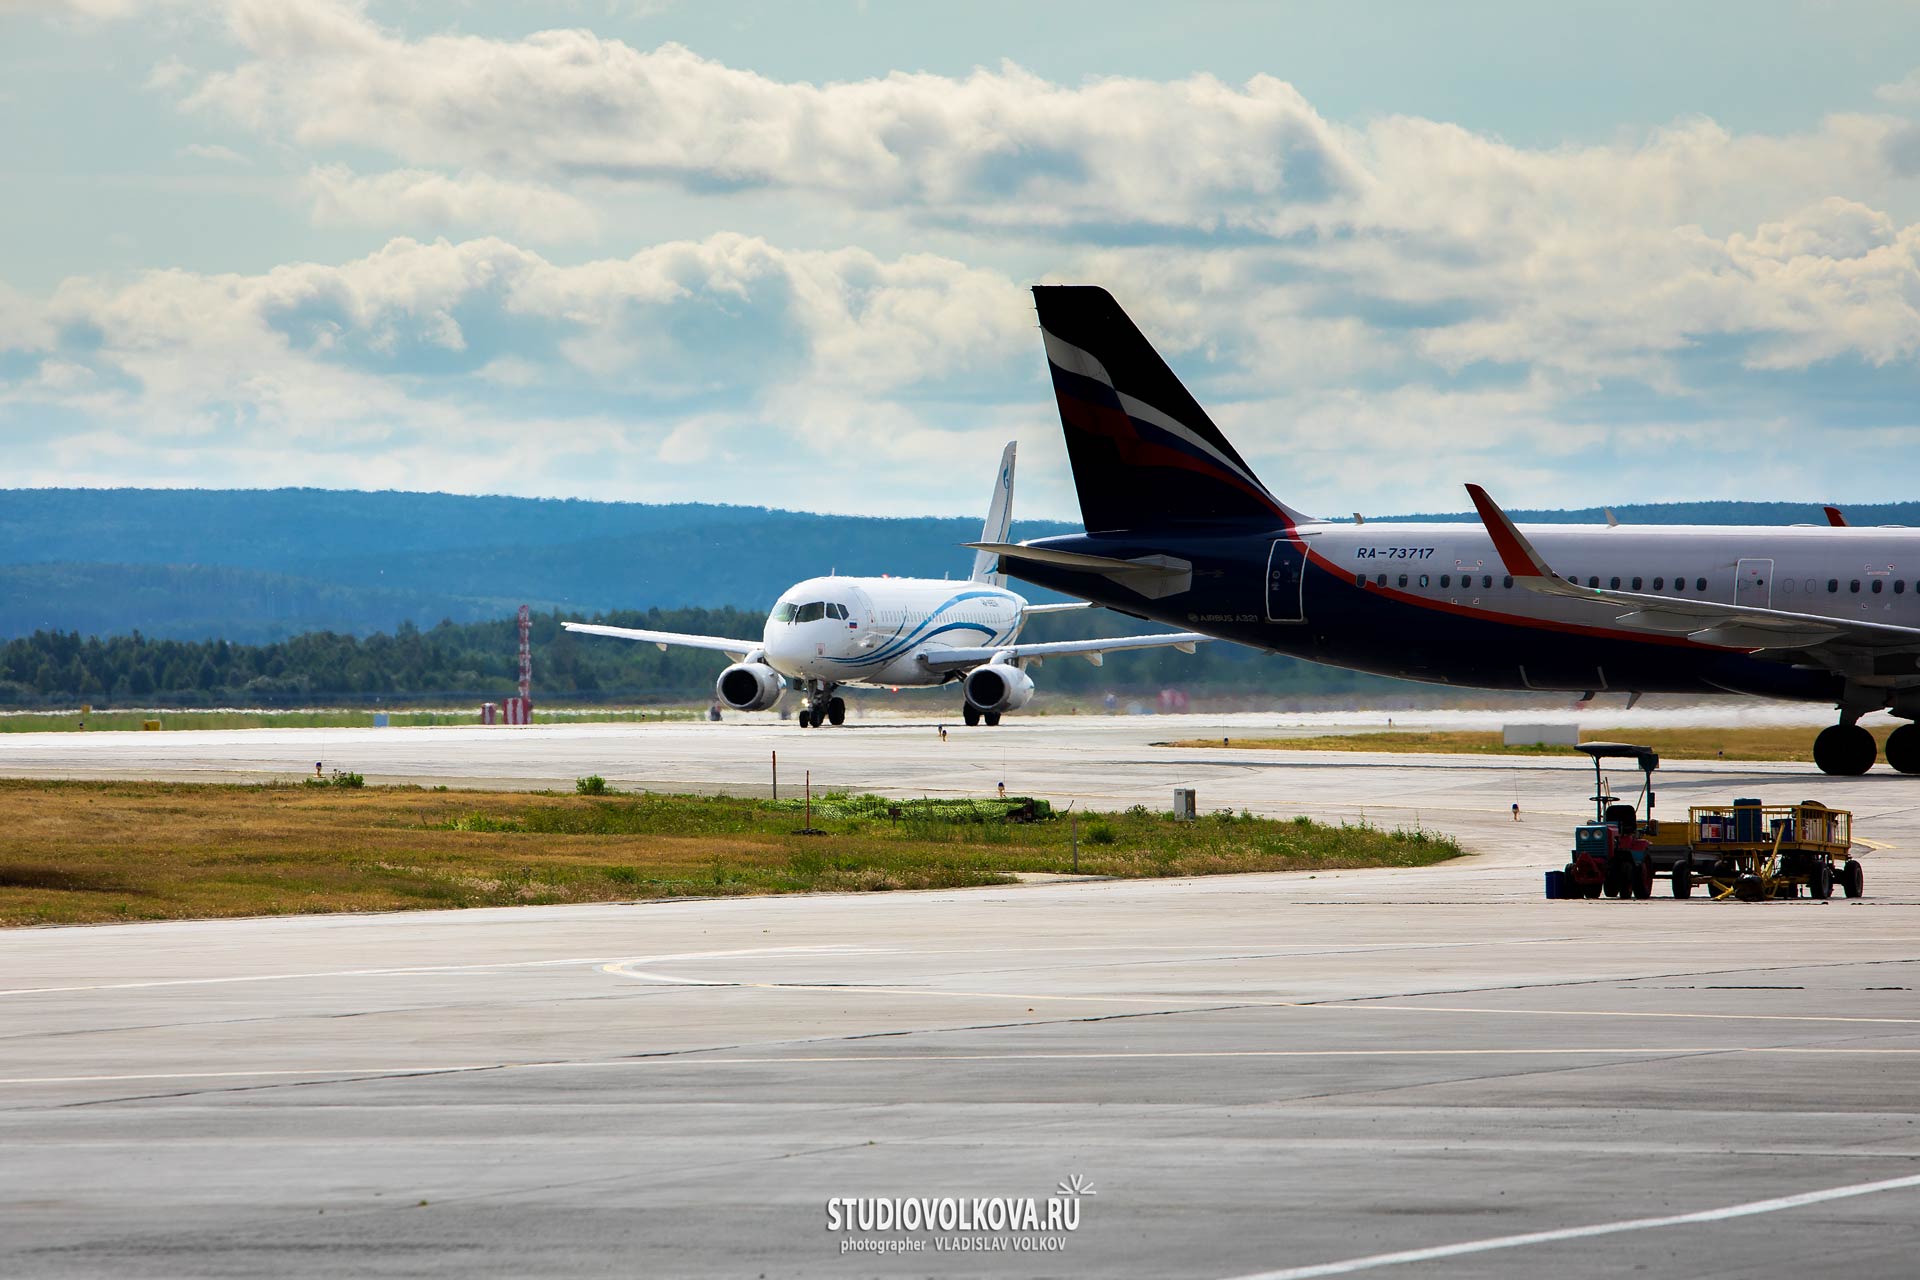 Фотографии самолетов в международном аэропорту Кольцово (споттинг). фотограф Владислав ВОЛКОВ